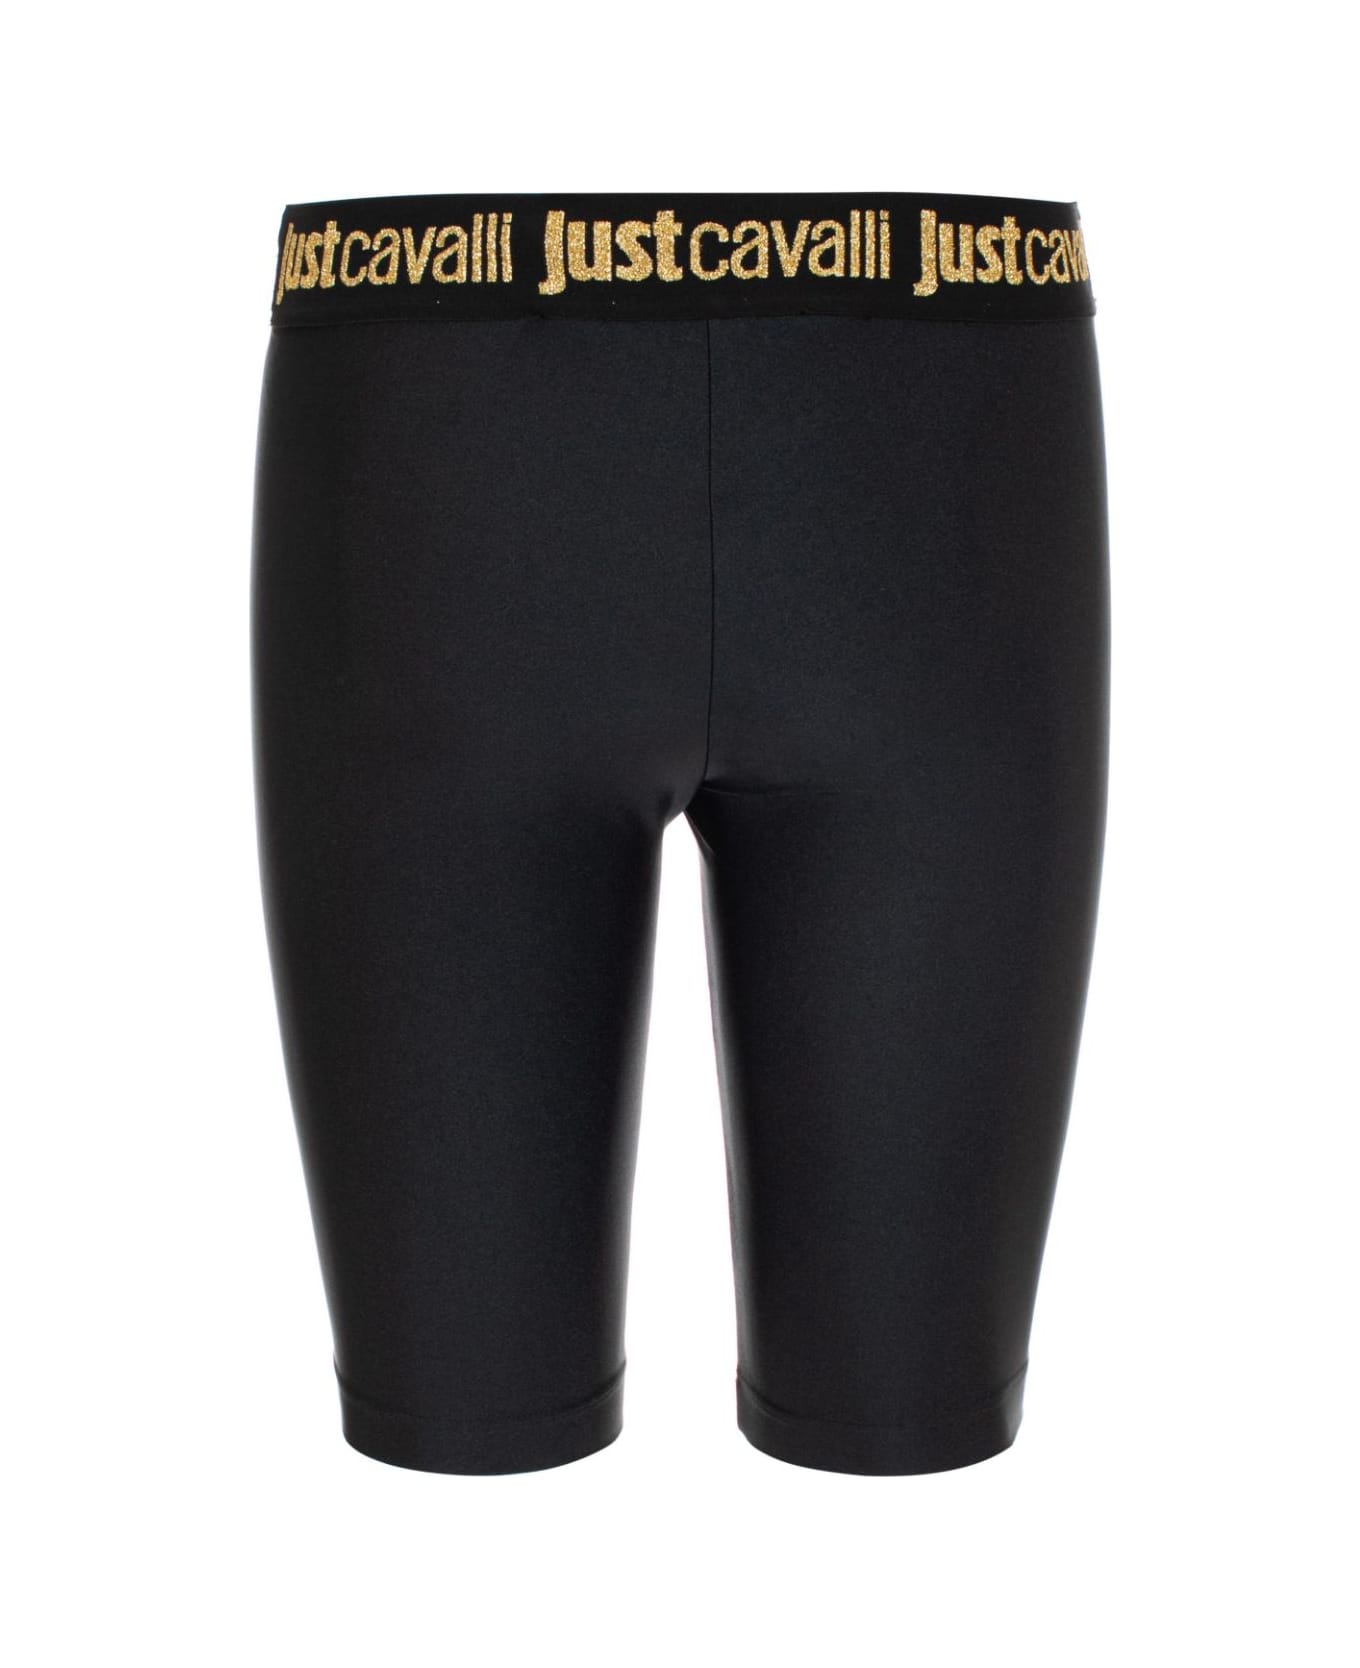 Just Cavalli Leggings - Black